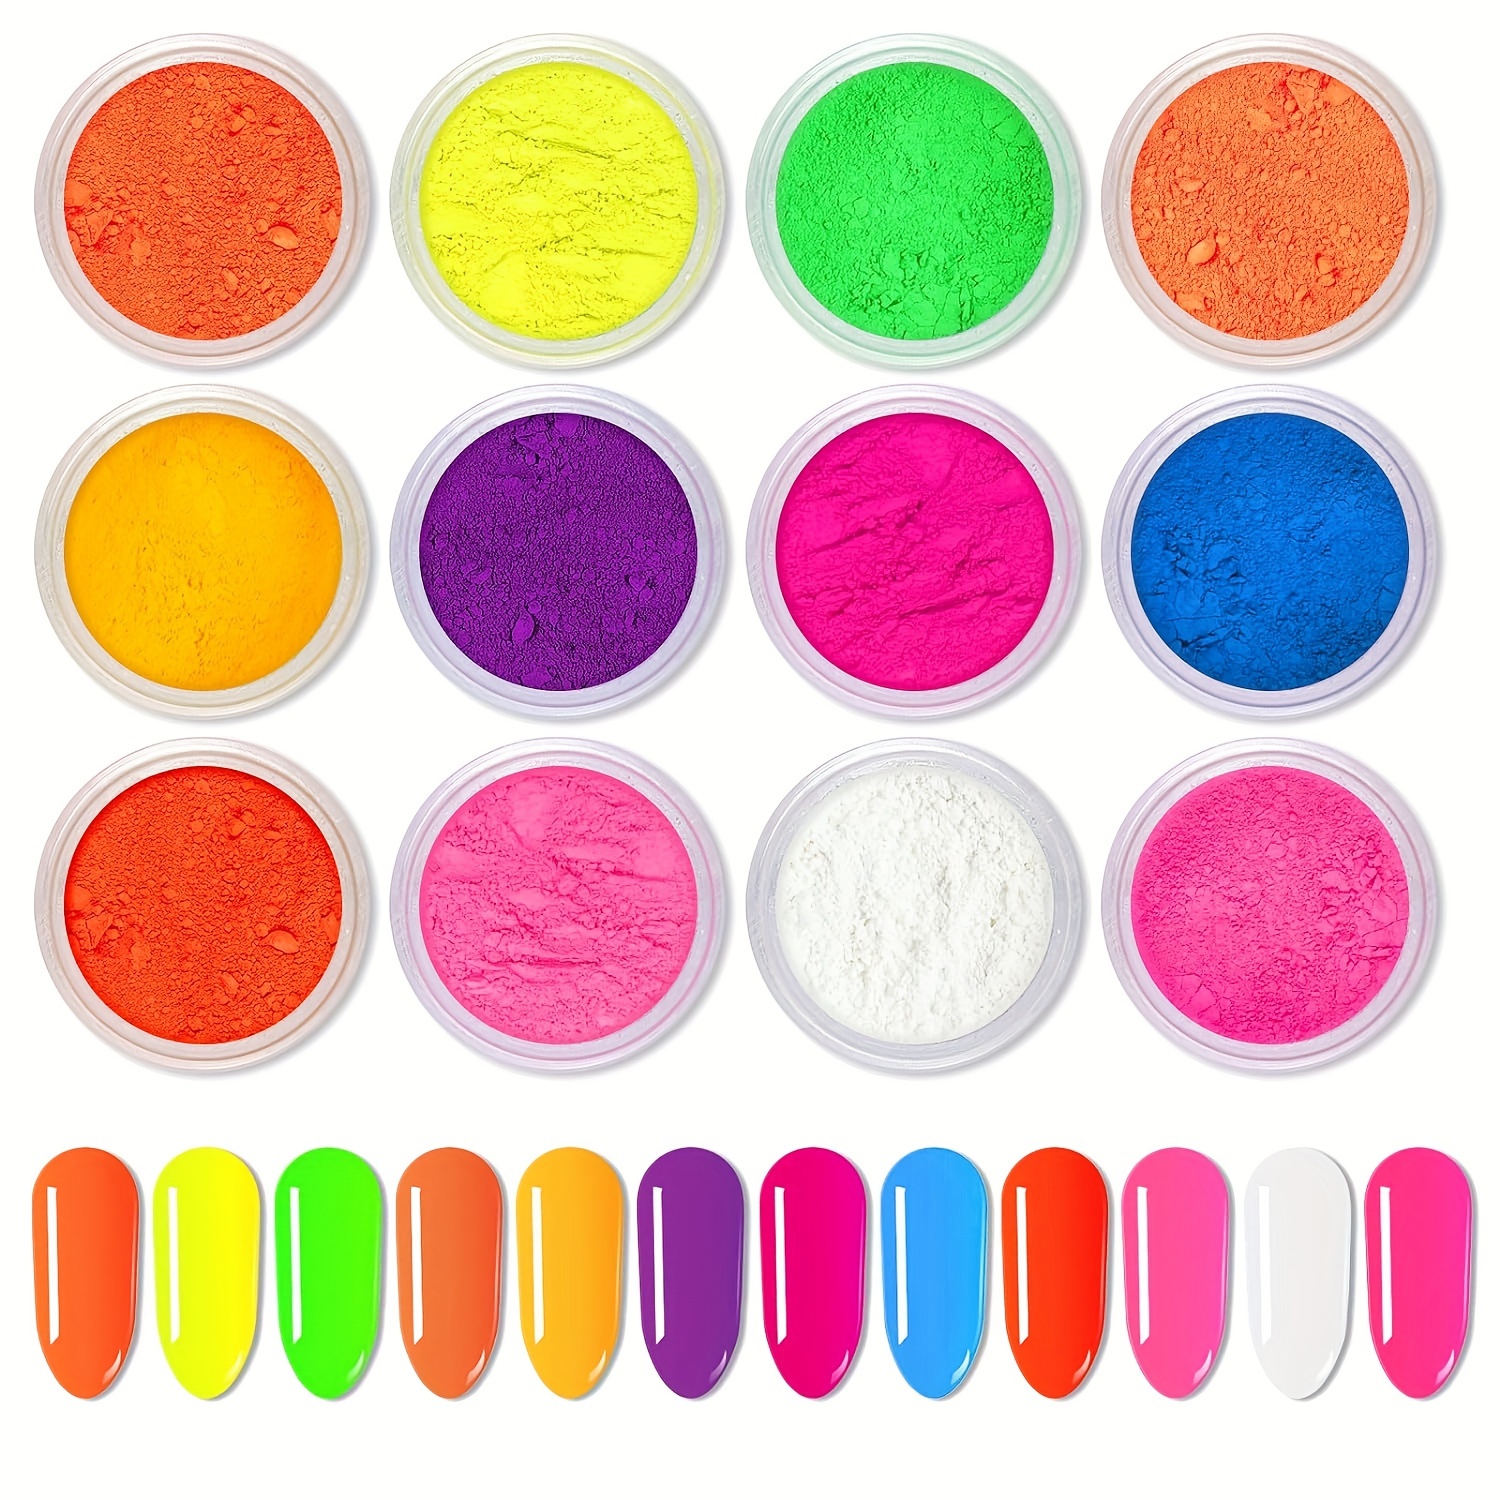 5PCS X Nail Artistry Neon Pigment Powder Kit